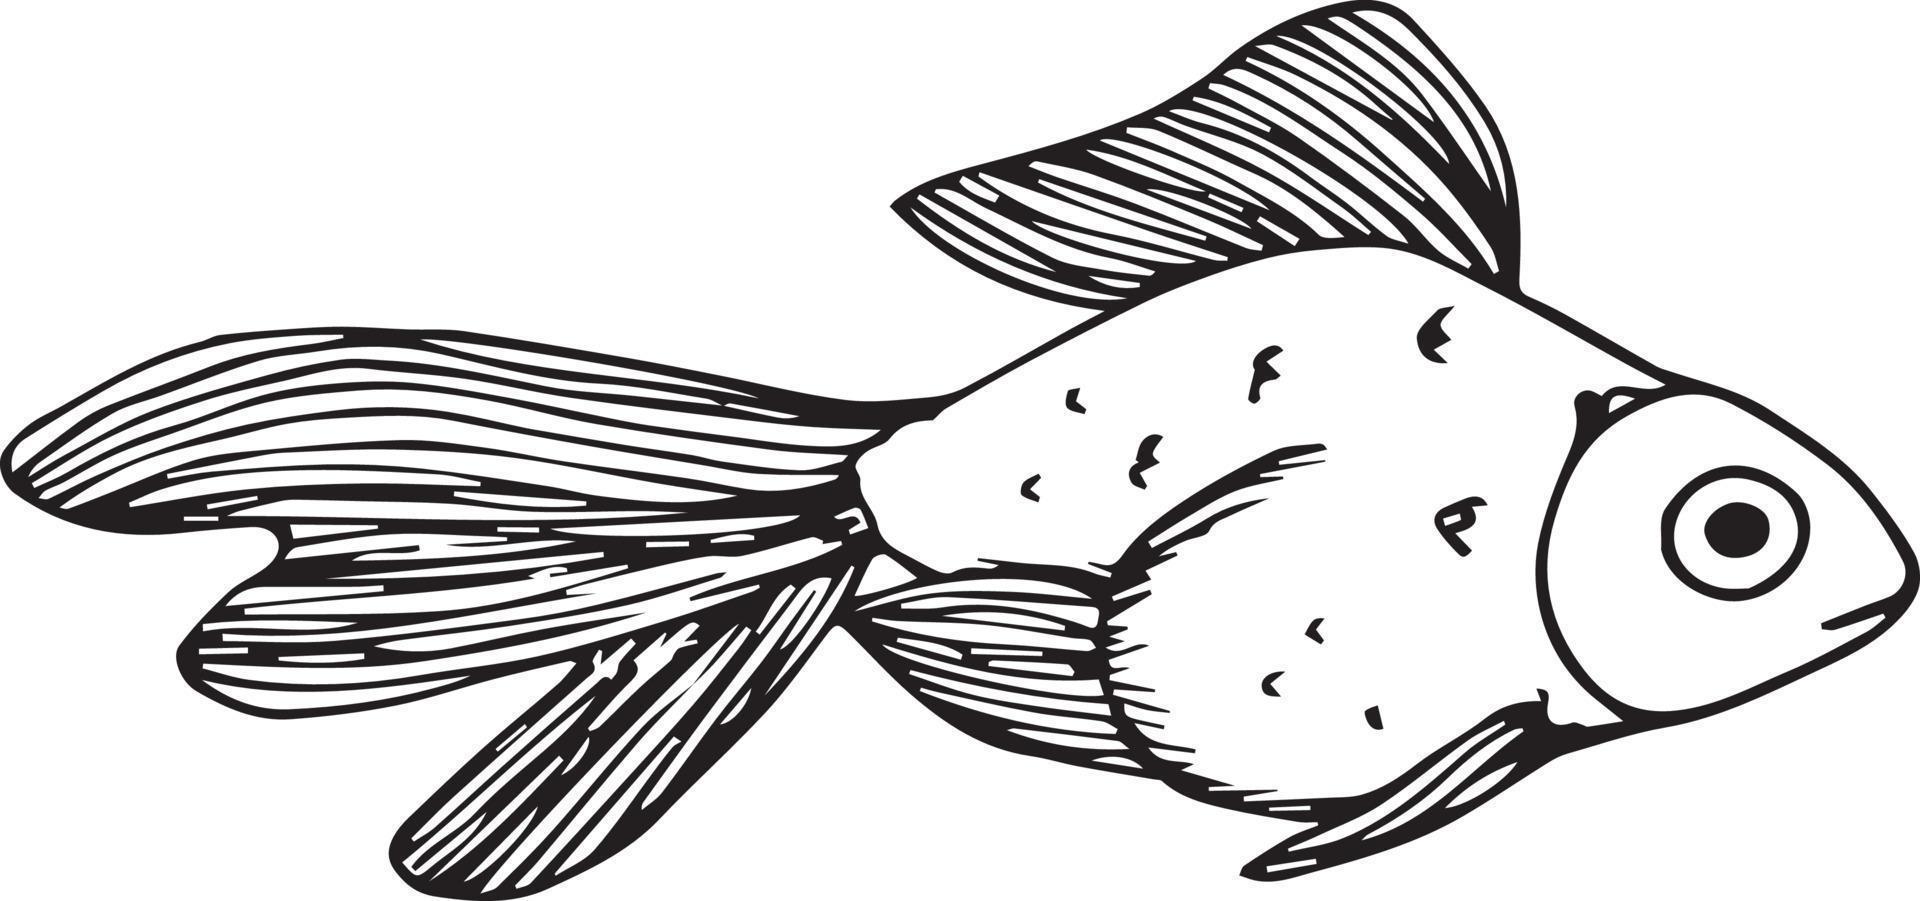 Gekritzelfisch auf weißem Hintergrund vektor